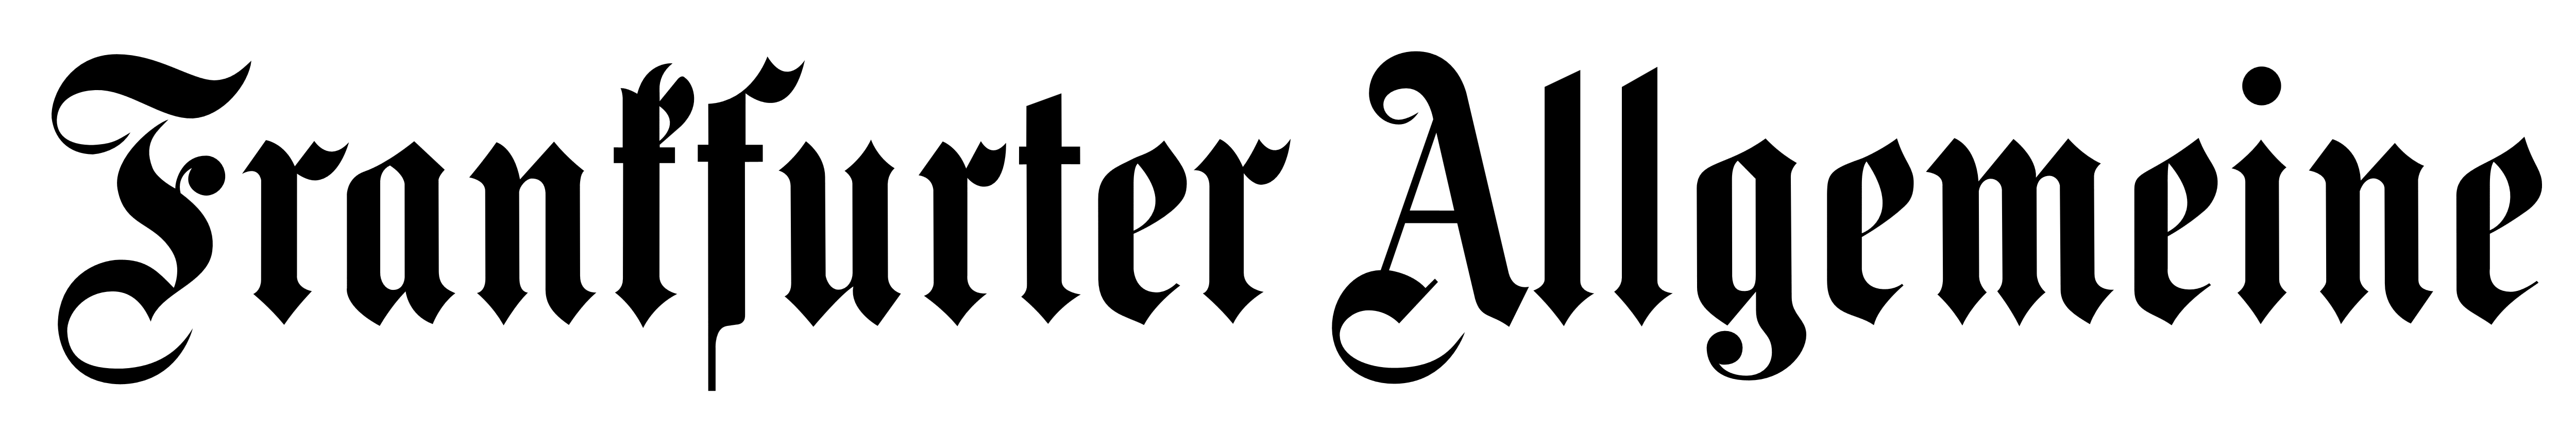 Frankfurter Allgemeine Logo Wallpaper